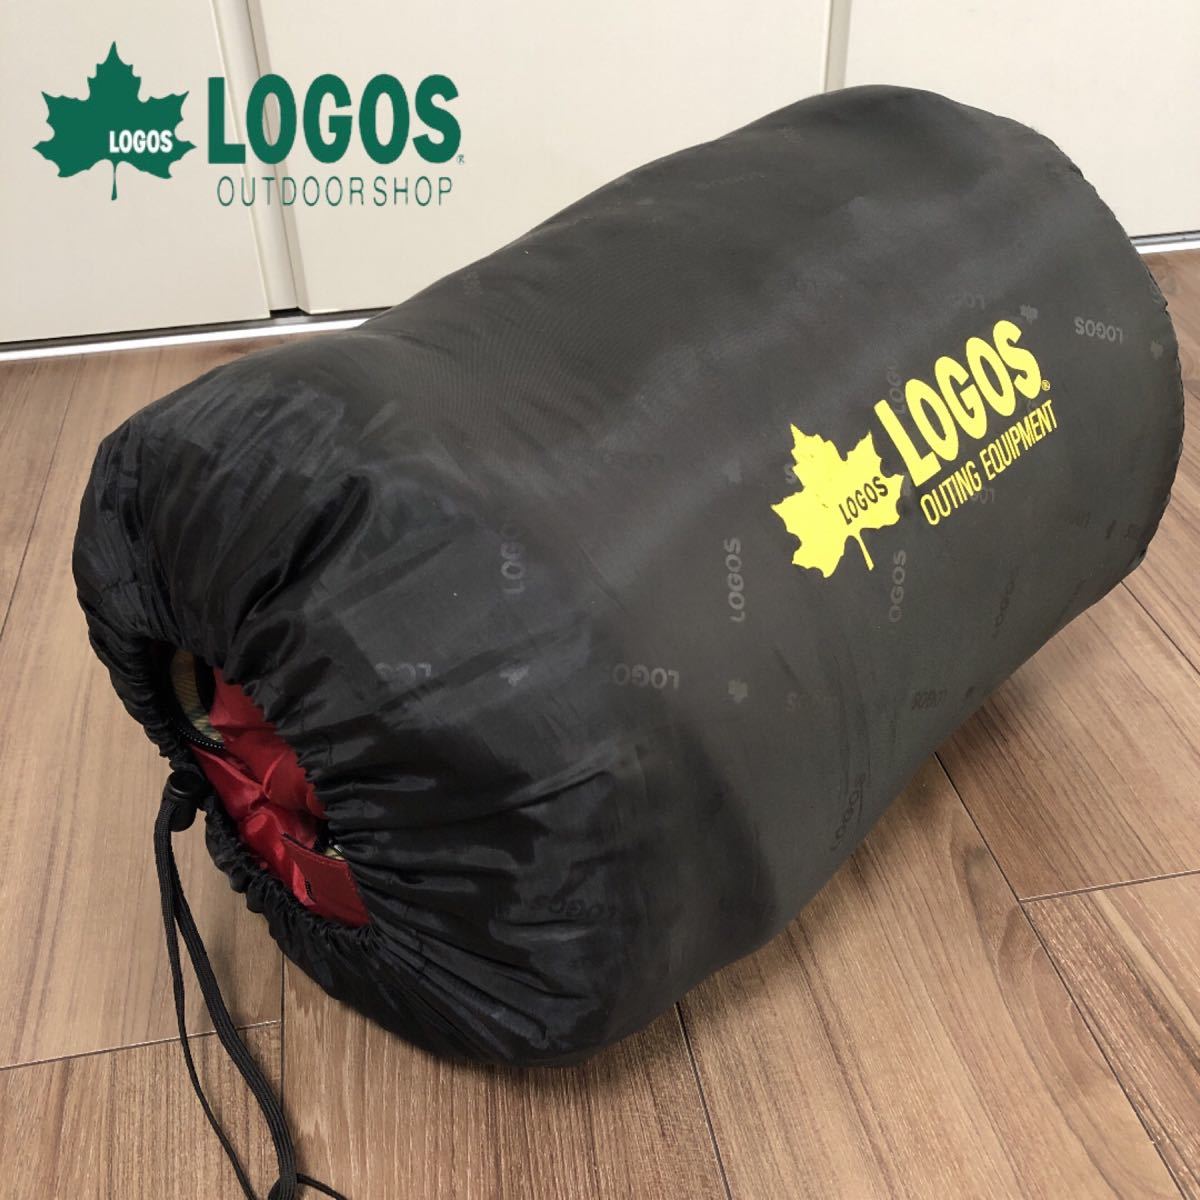 LOGOS ロゴス プレージアFX 寝袋 シュラフ 封筒型 キャンプ